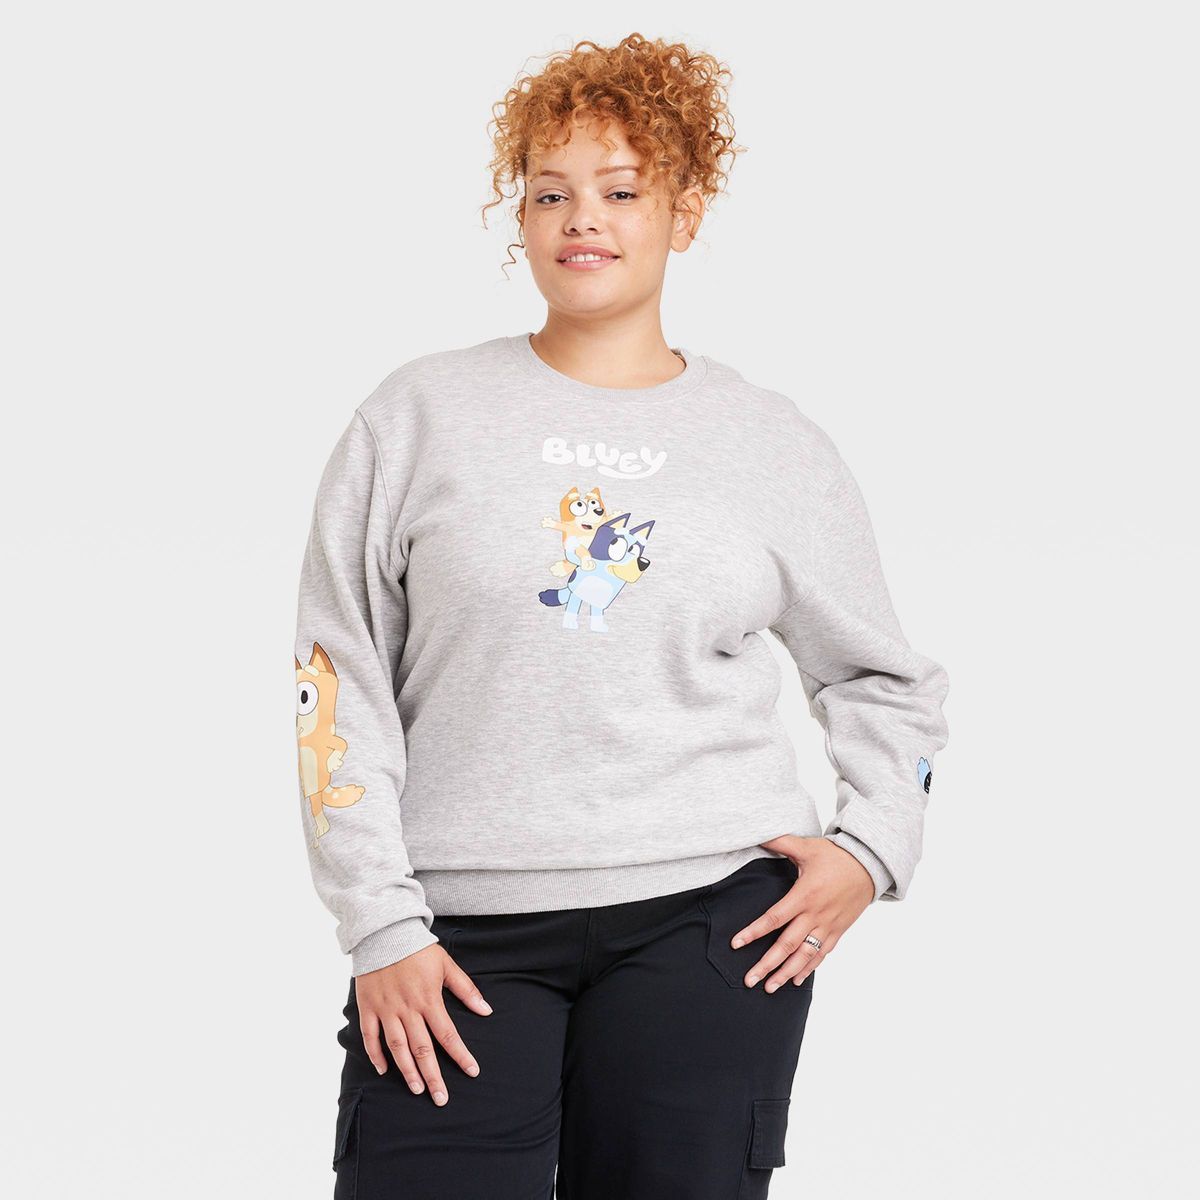 Women's Bluey Graphic Sweatshirt - Gray | Target